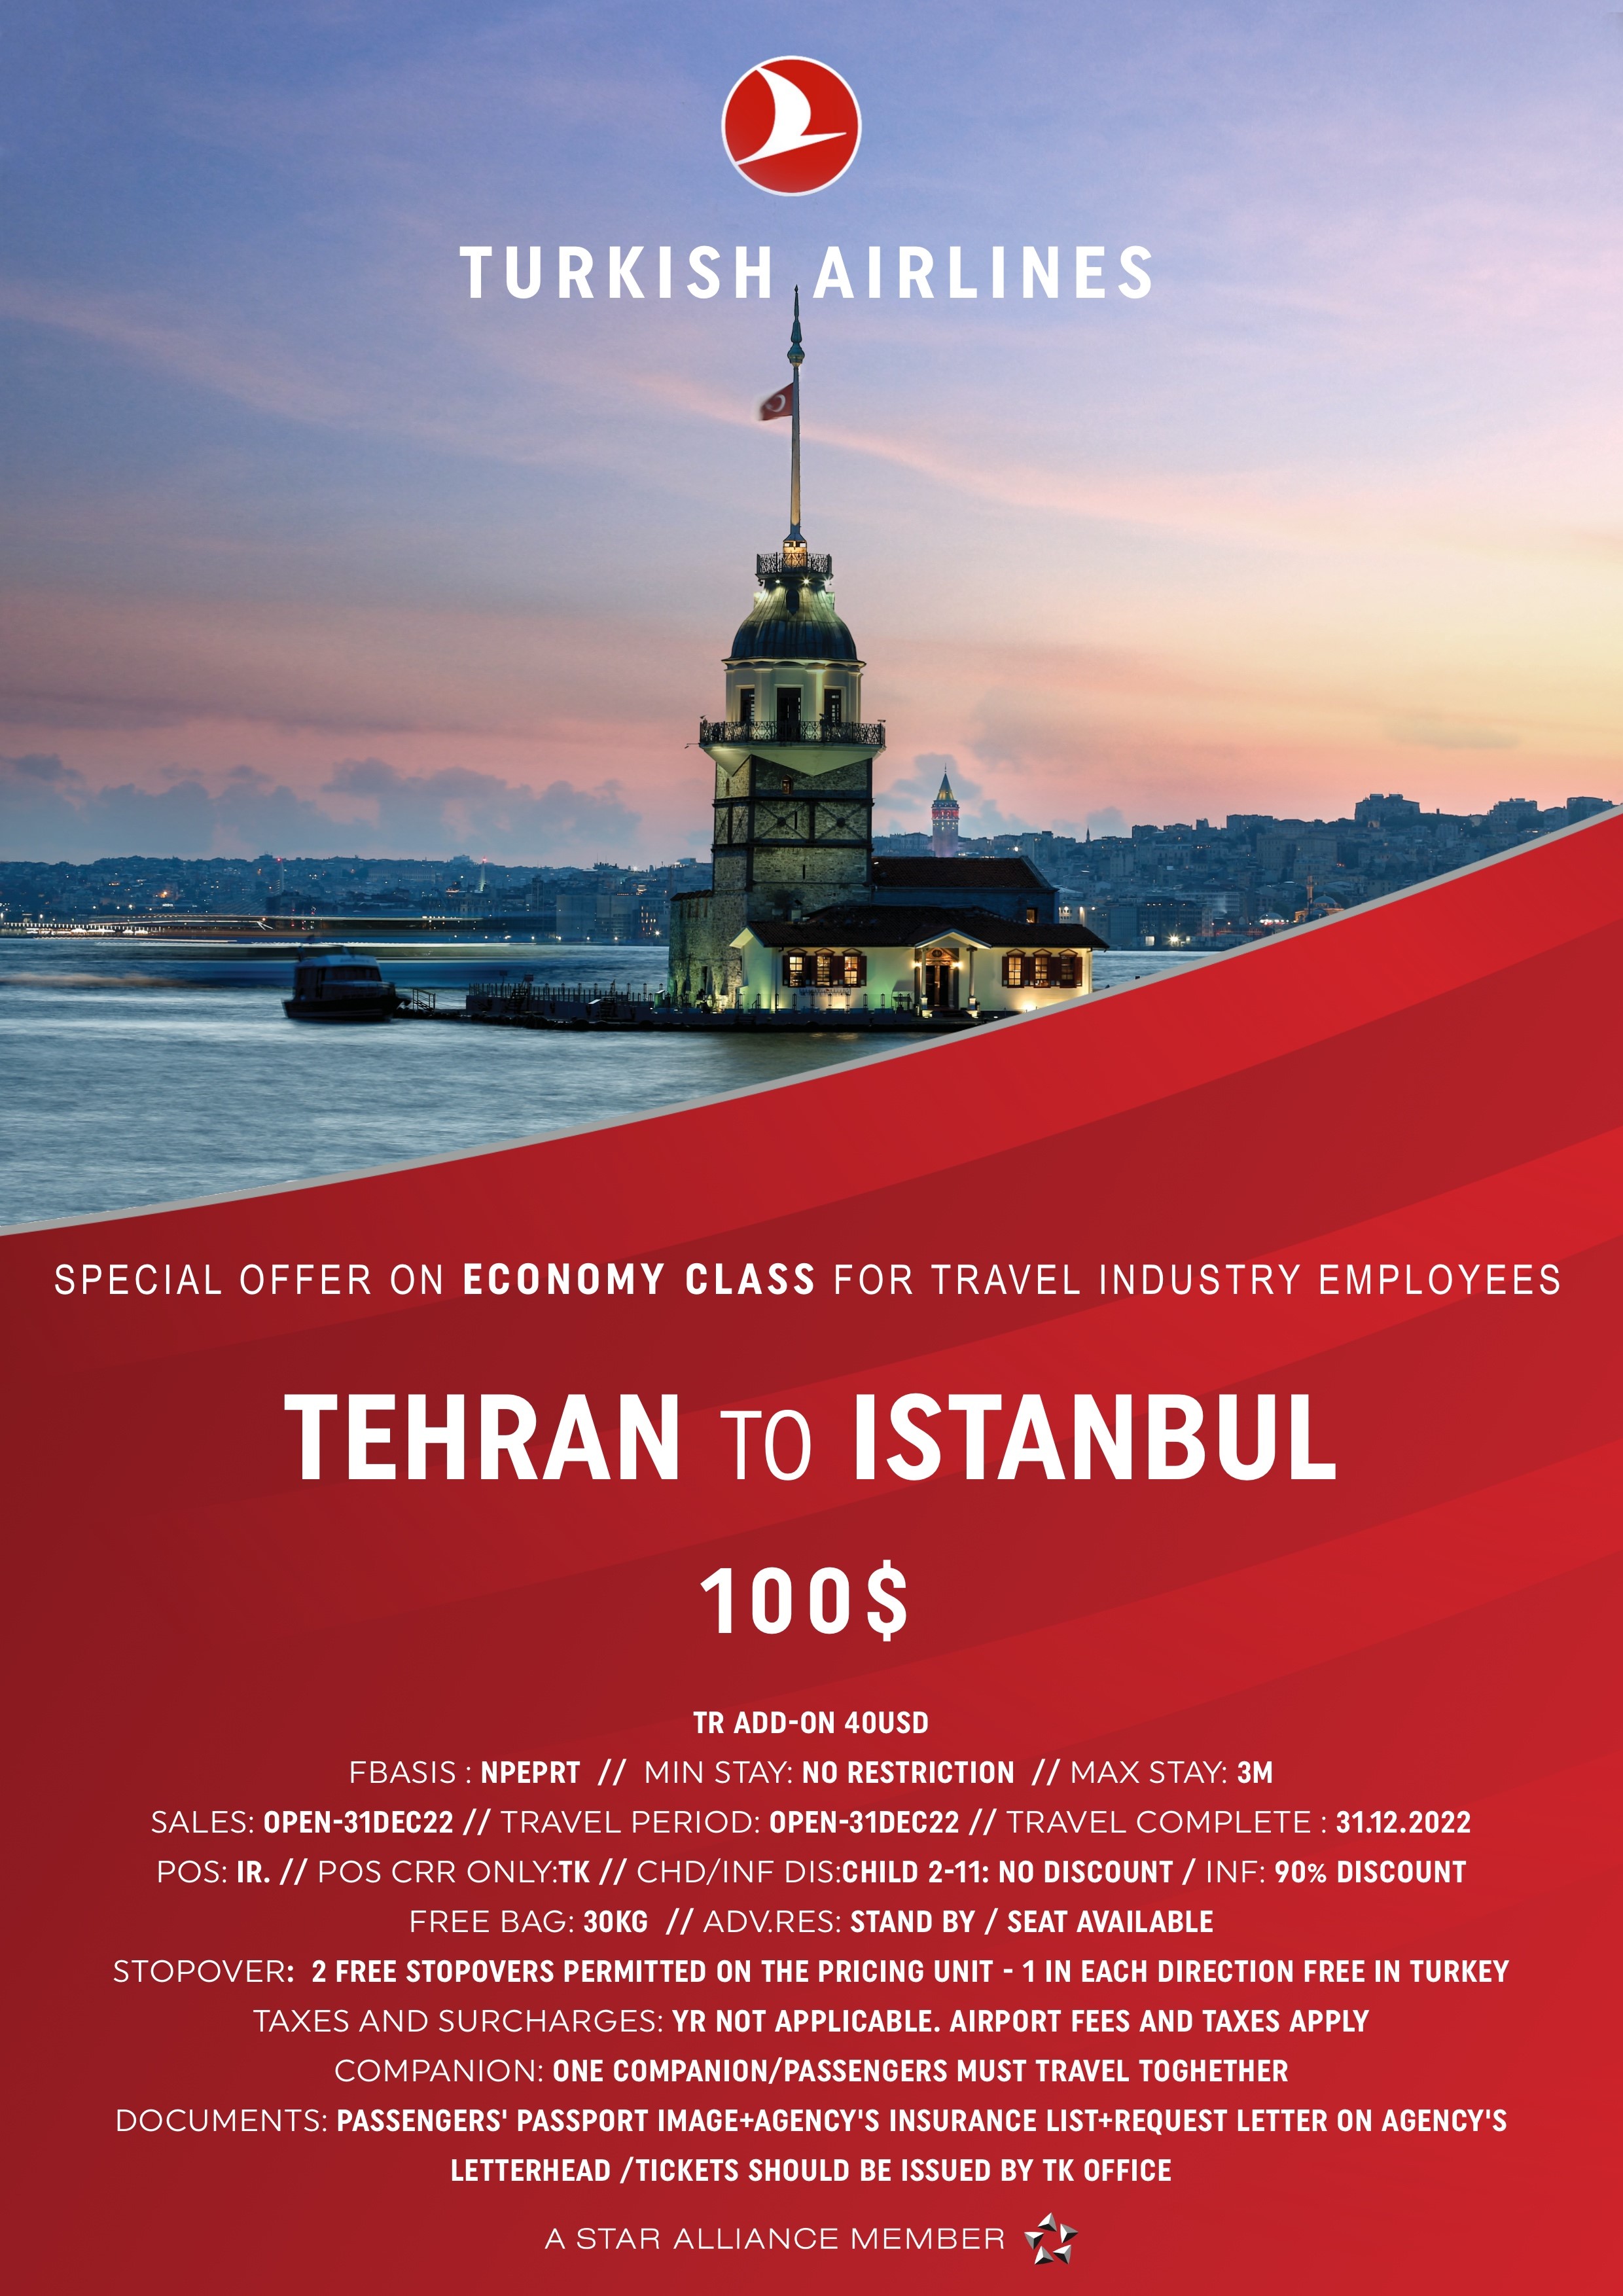 بخشنامه و اطلاعیه   هواپیمایی ترکیش درباره  نرخ های ویژه کلاس اکونومی برای کارمندان صنعت گردشگری از تهران به استانبول تا تاریخ 31 دسامبر2022